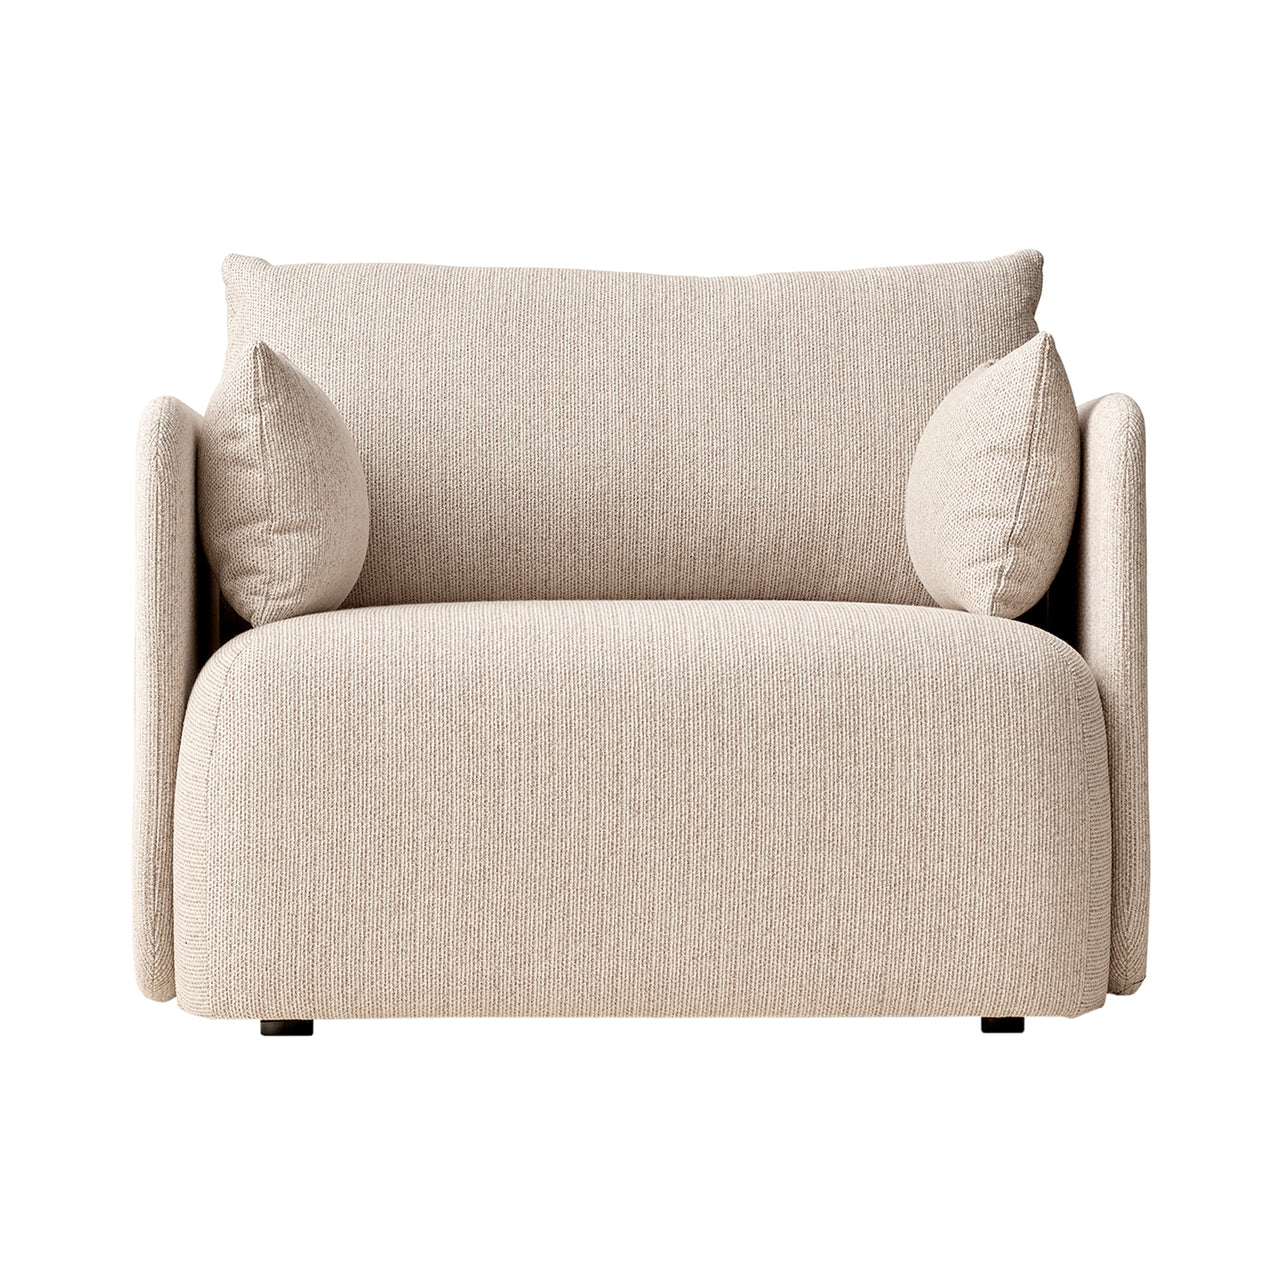 Offset Sofa: 1 Seater